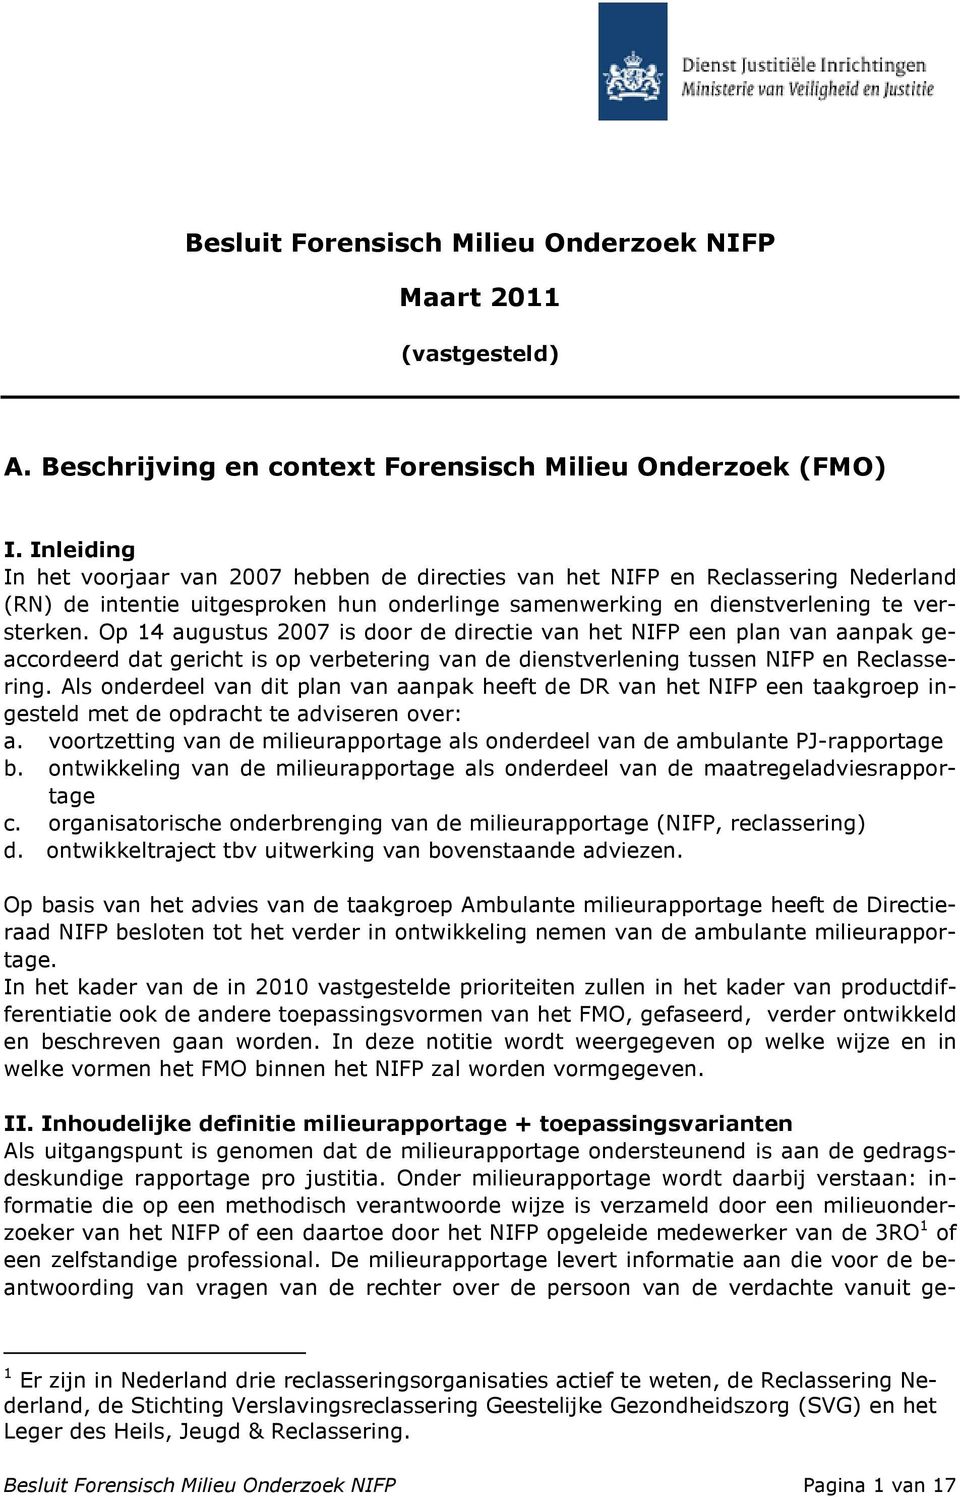 Op 14 augustus 2007 is door de directie van het NIFP een plan van aanpak geaccordeerd dat gericht is op verbetering van de dienstverlening tussen NIFP en Reclassering.